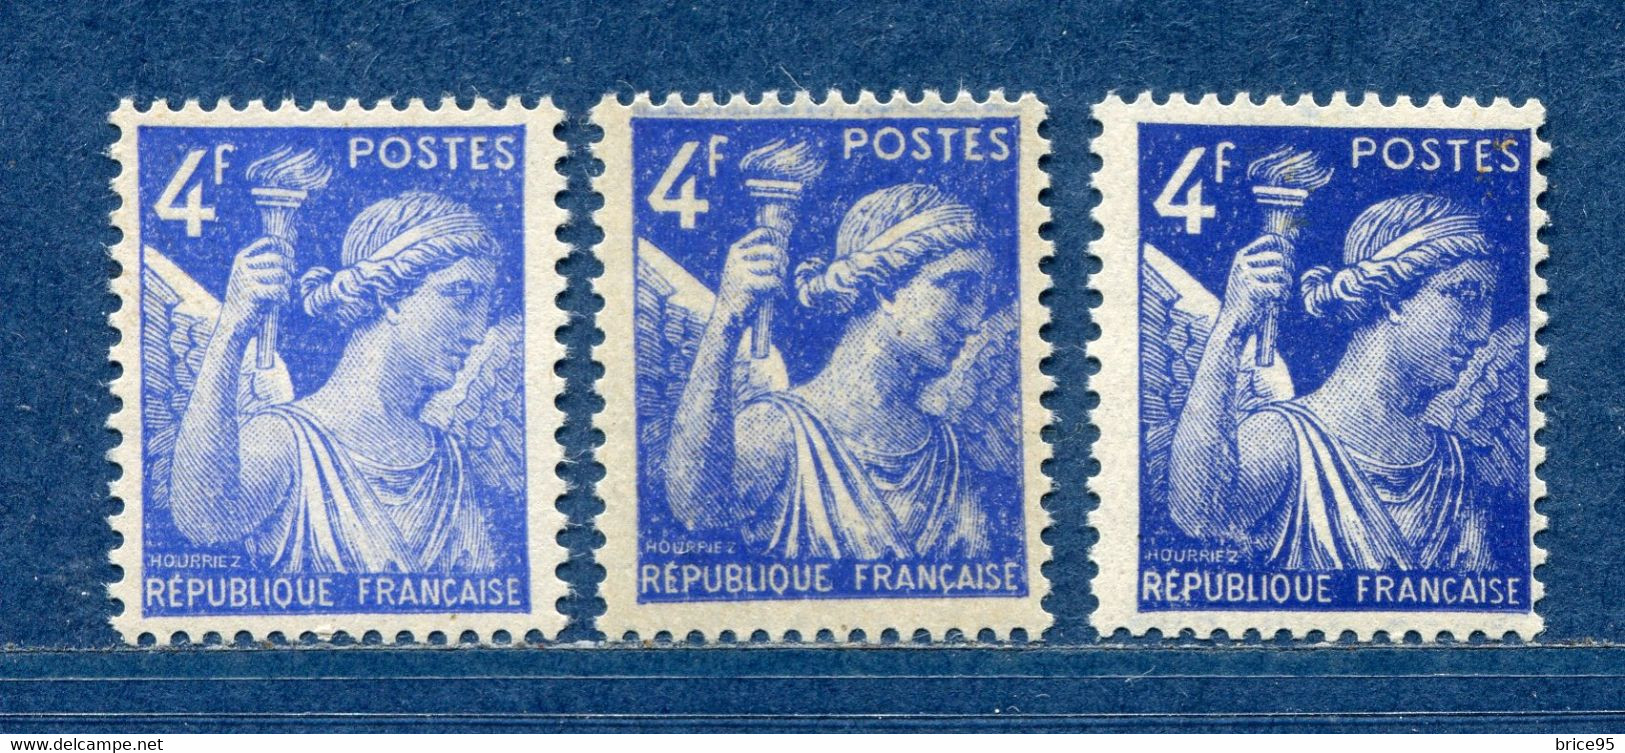 ⭐ France - Variété - YT N° 656 - Couleurs - Pétouilles - Neuf Sans Charnière - 1944 ⭐ - Neufs